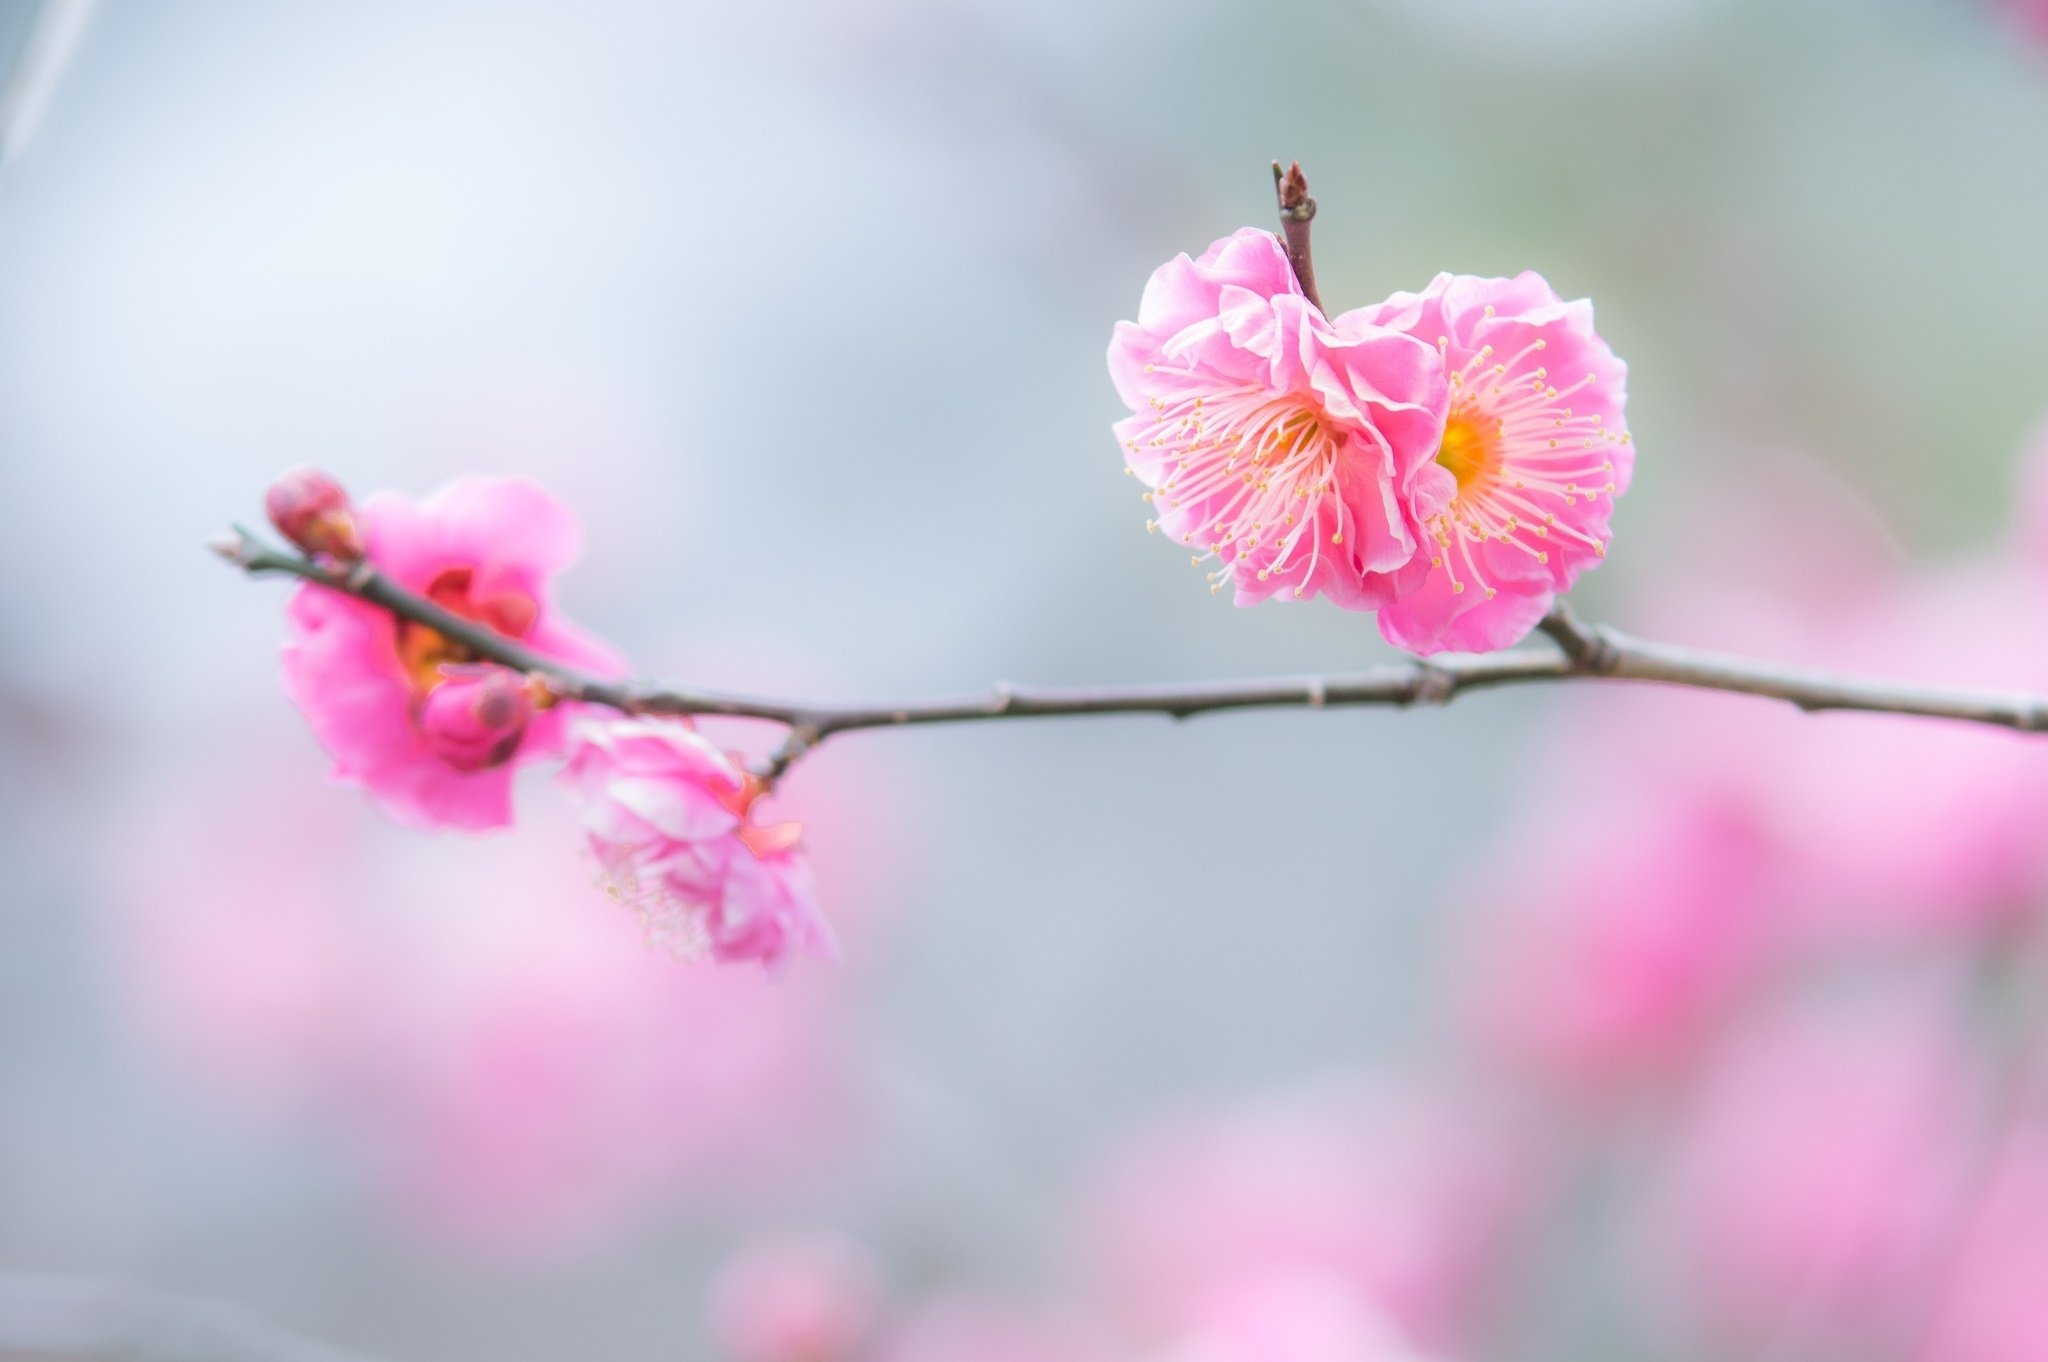 Flowers twig branch pink macro spring bloom wallpaper | 2048x1362 ...